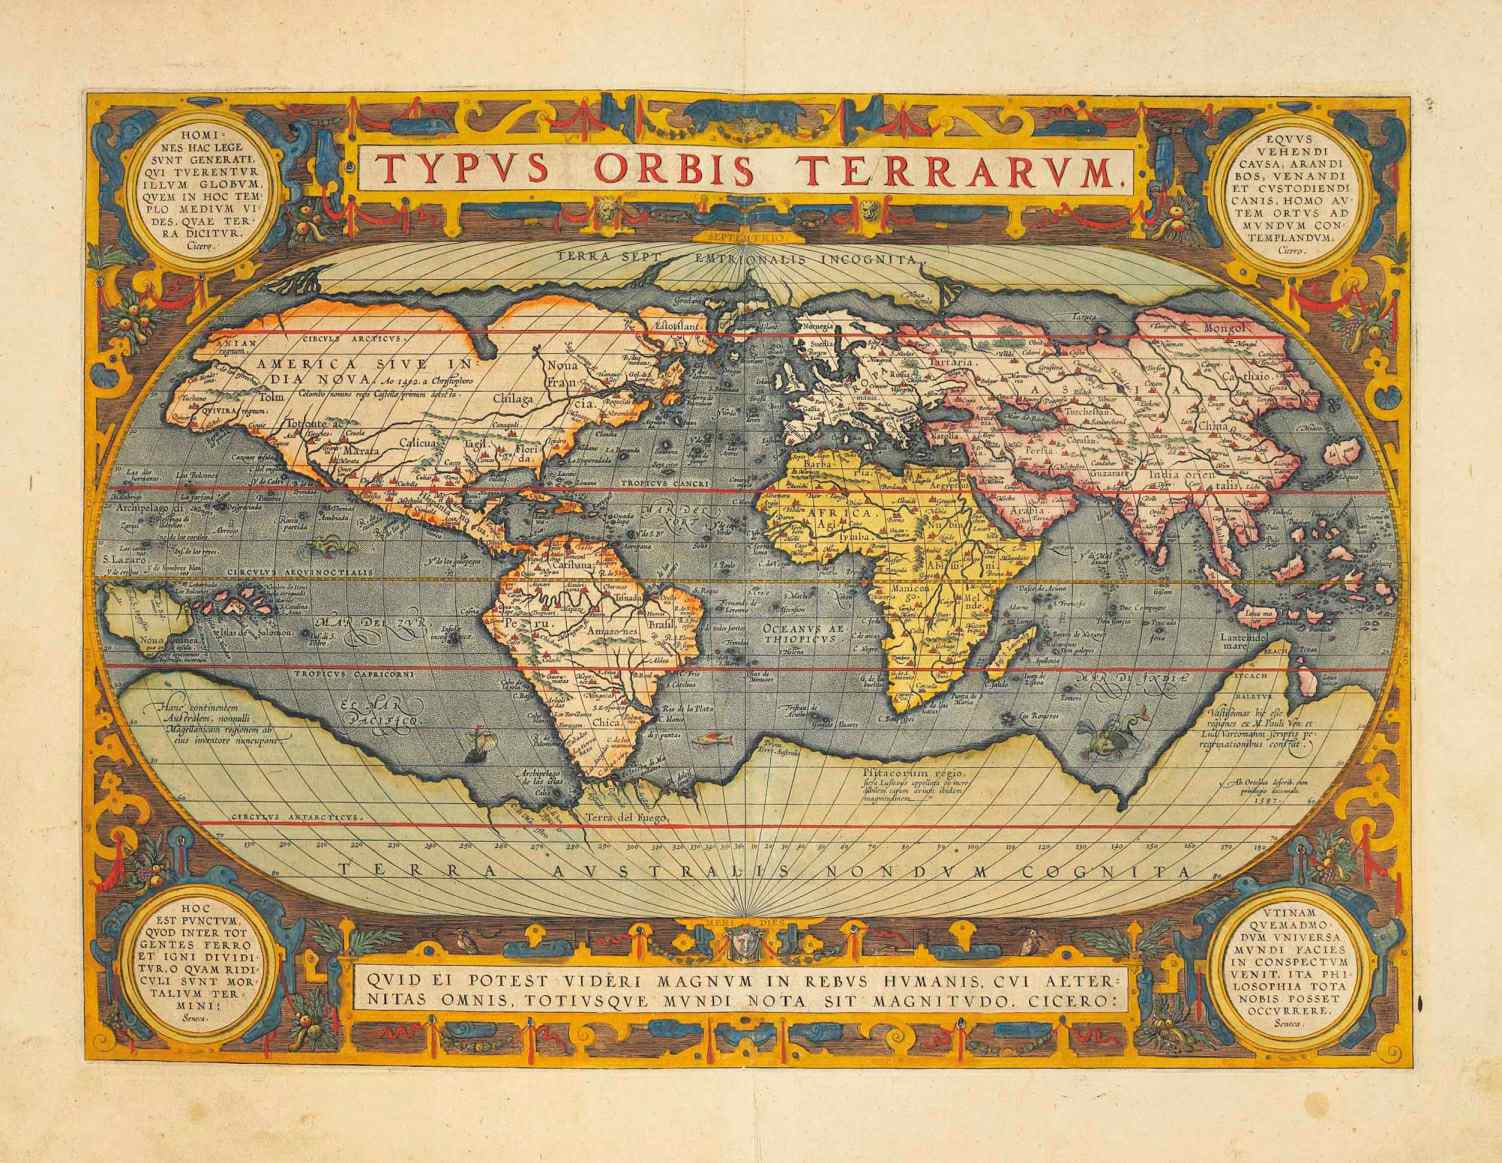 บนแผนที่ 1570 นี้ Hyperborea แสดงเป็นทวีปอาร์กติกและอธิบายว่าเป็น "Terra Septemtrionalis Incognita" (Unknown Northern Land)